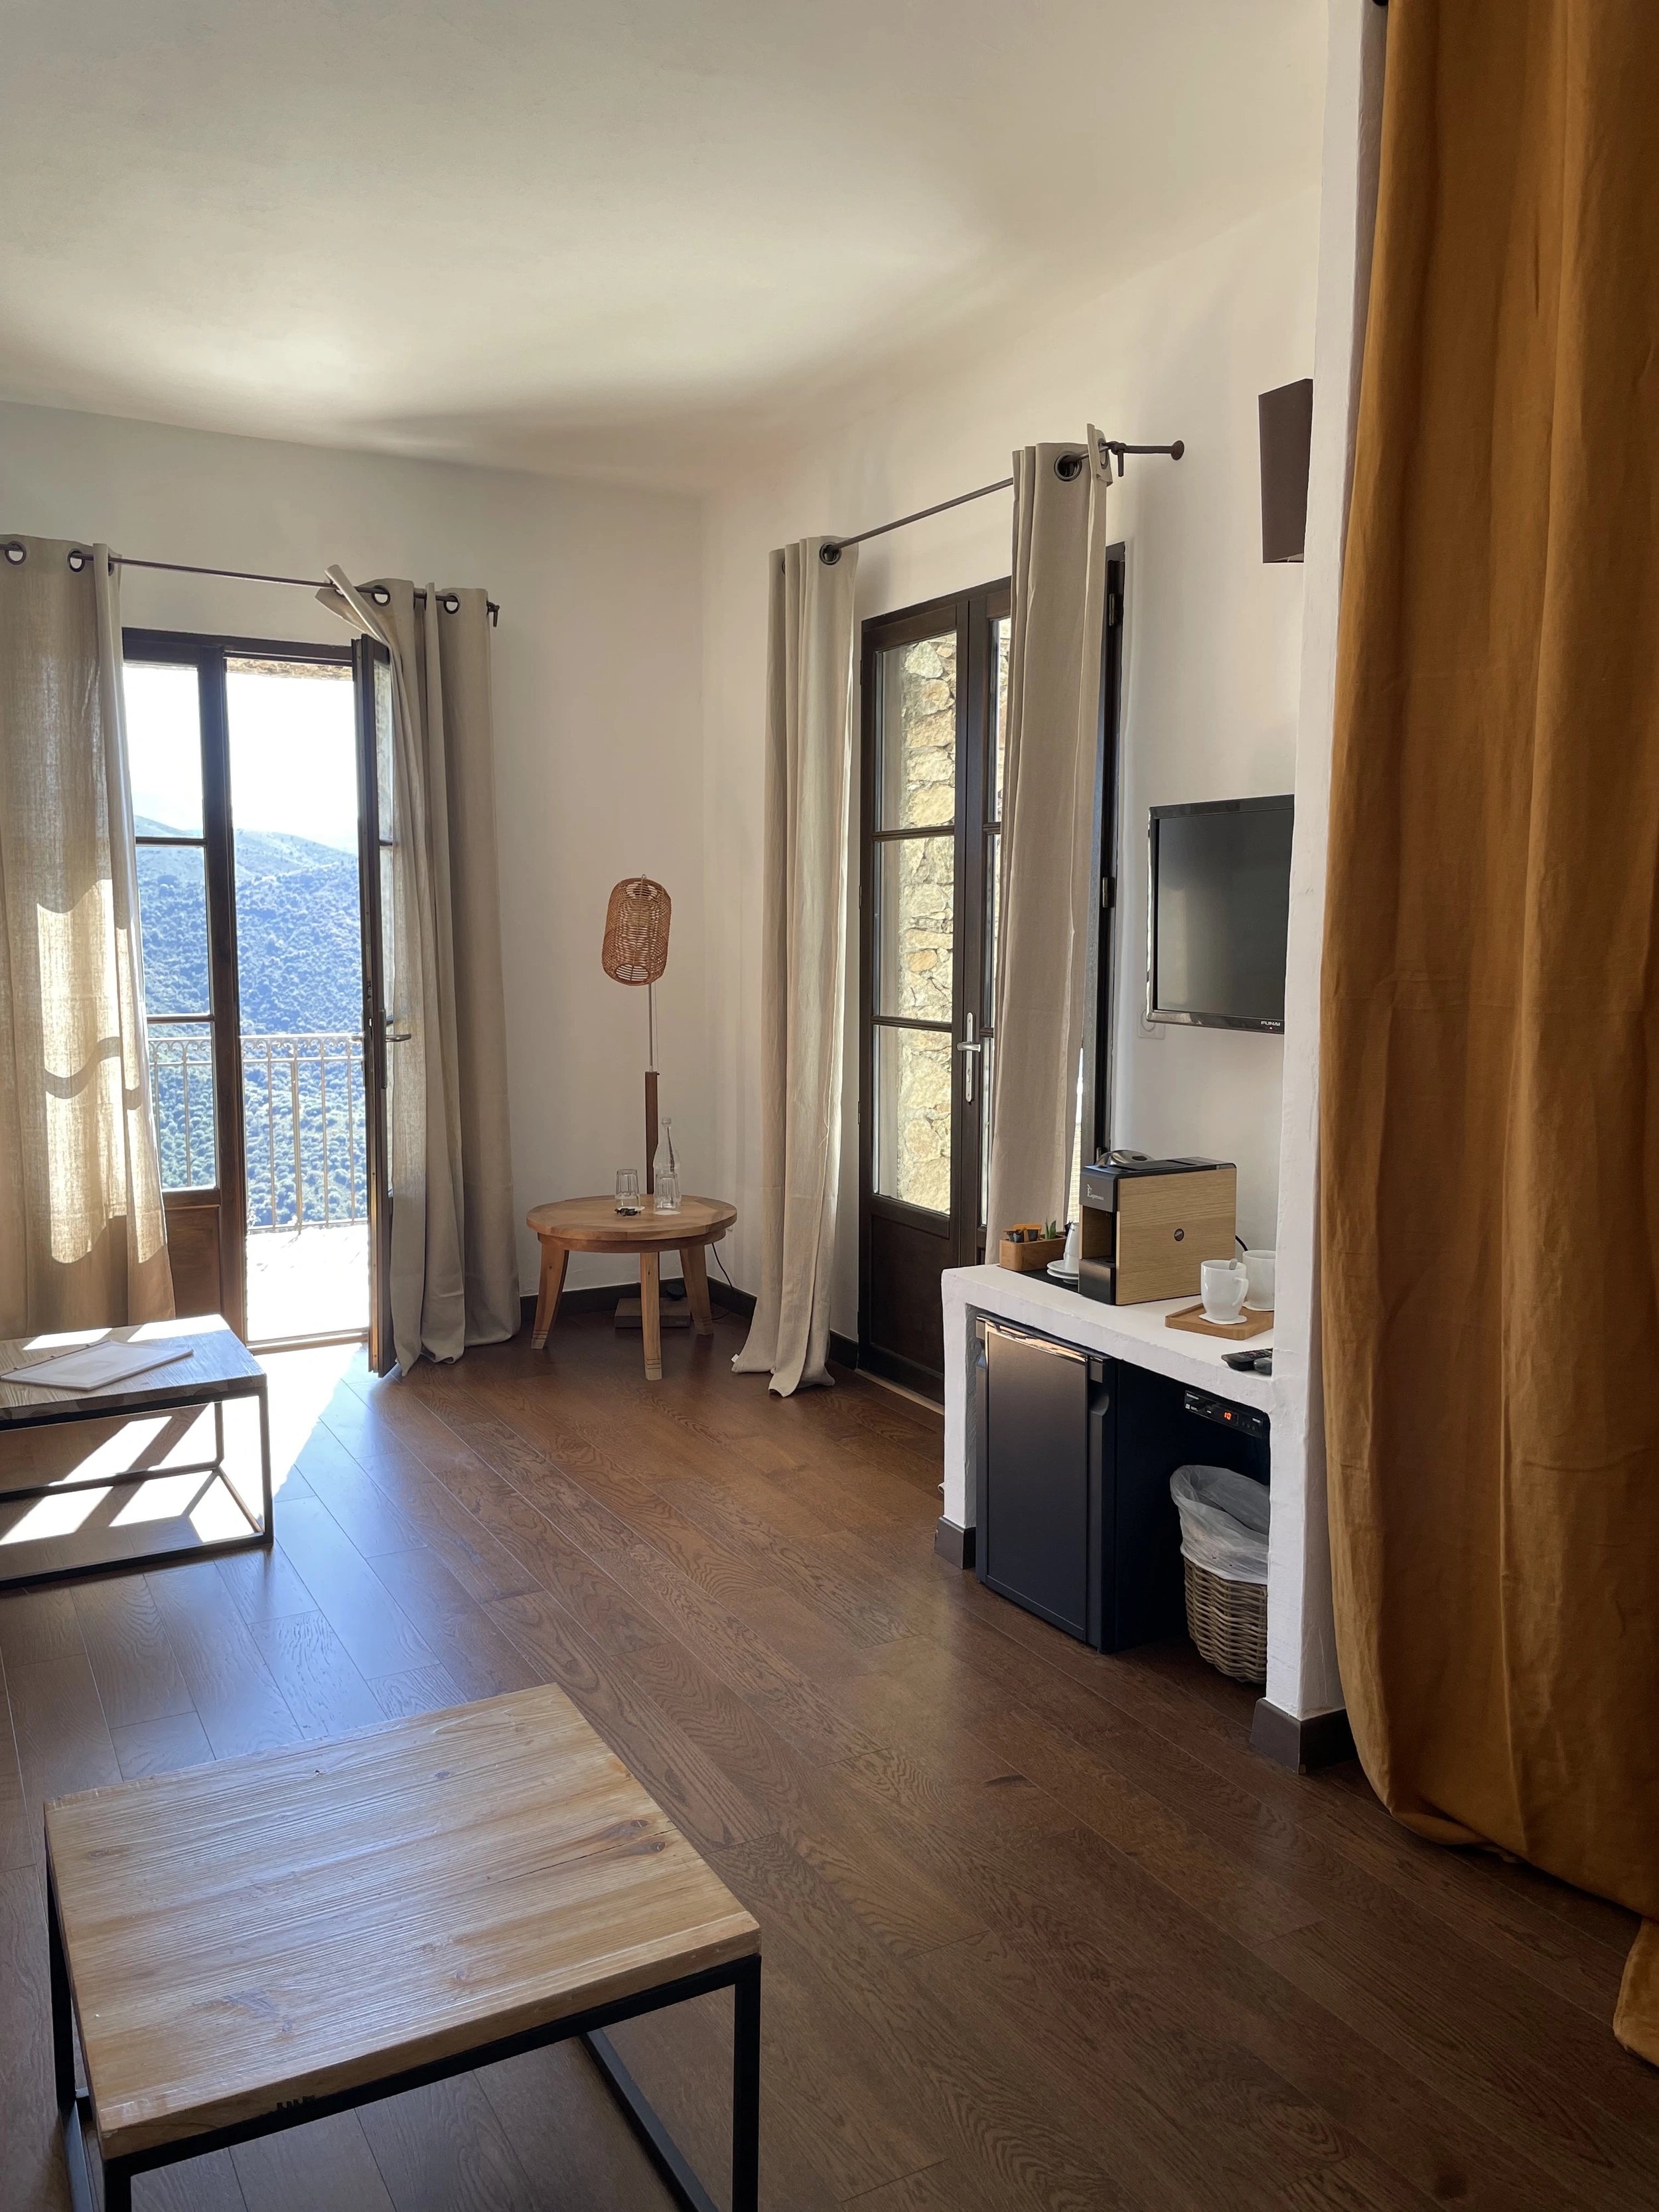 Les suites de charme dans l'hôtel authentique Case Latine en Corse